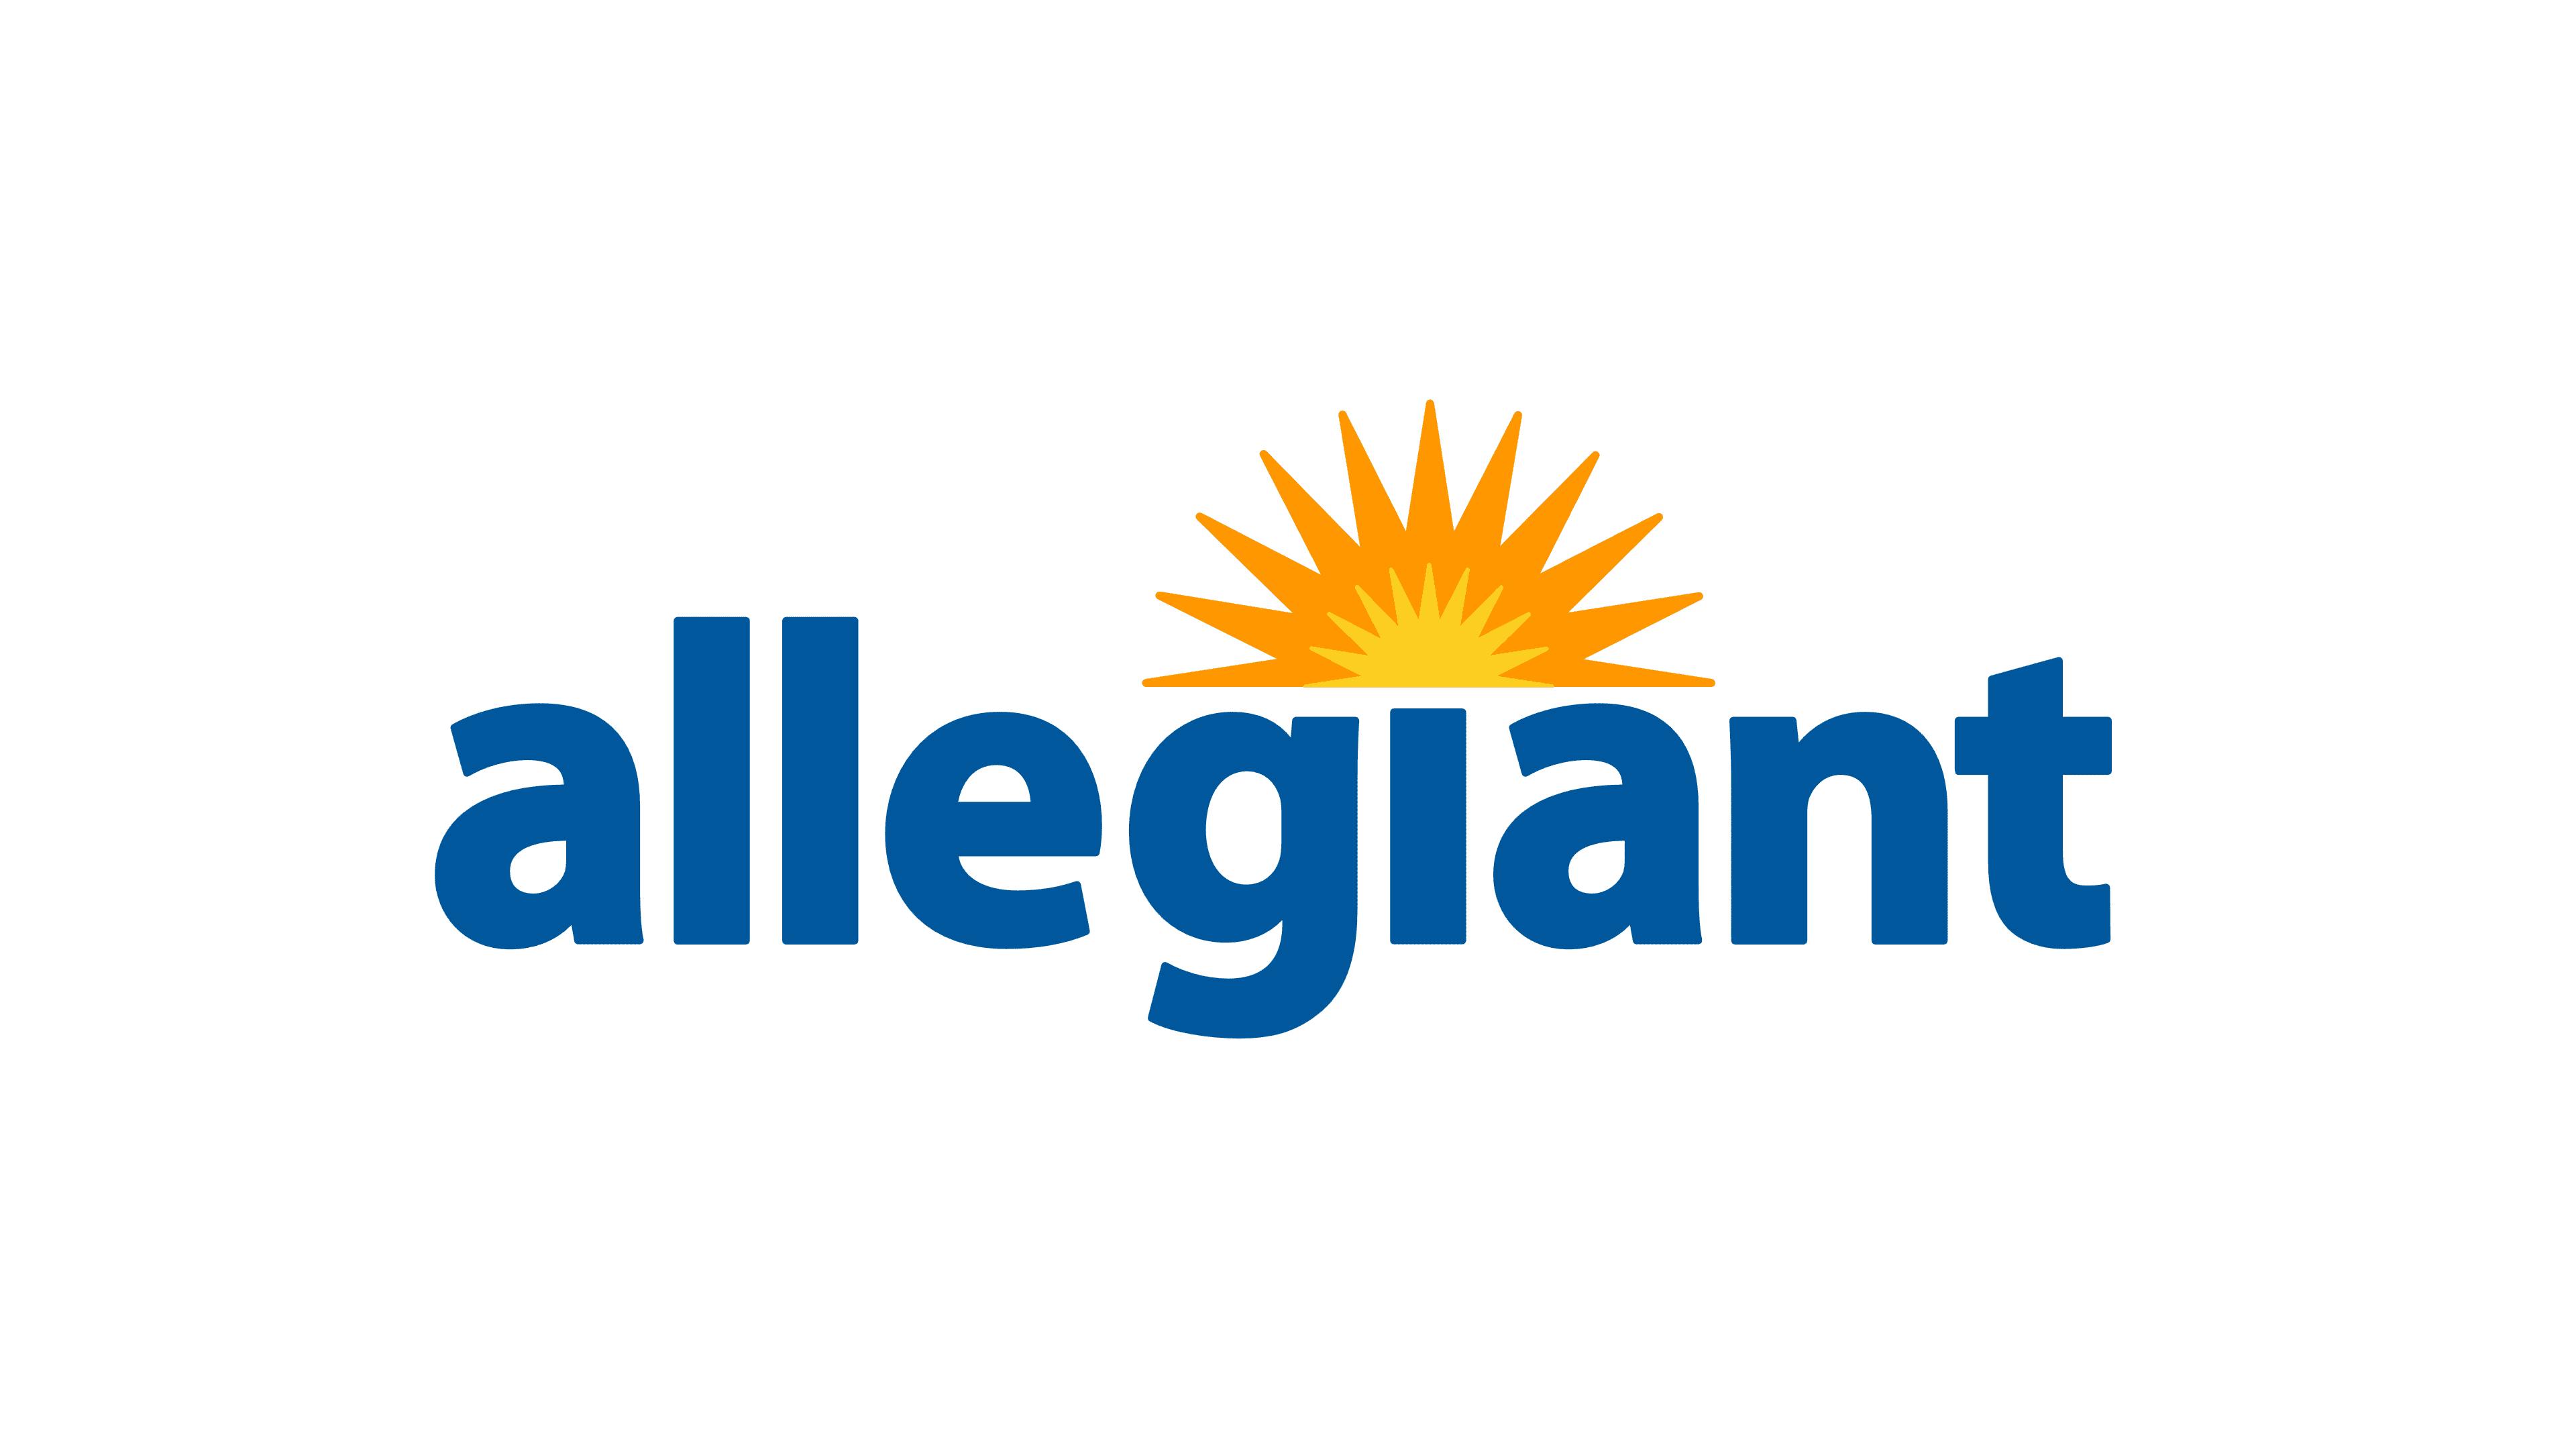 Allegiant-Air-logo